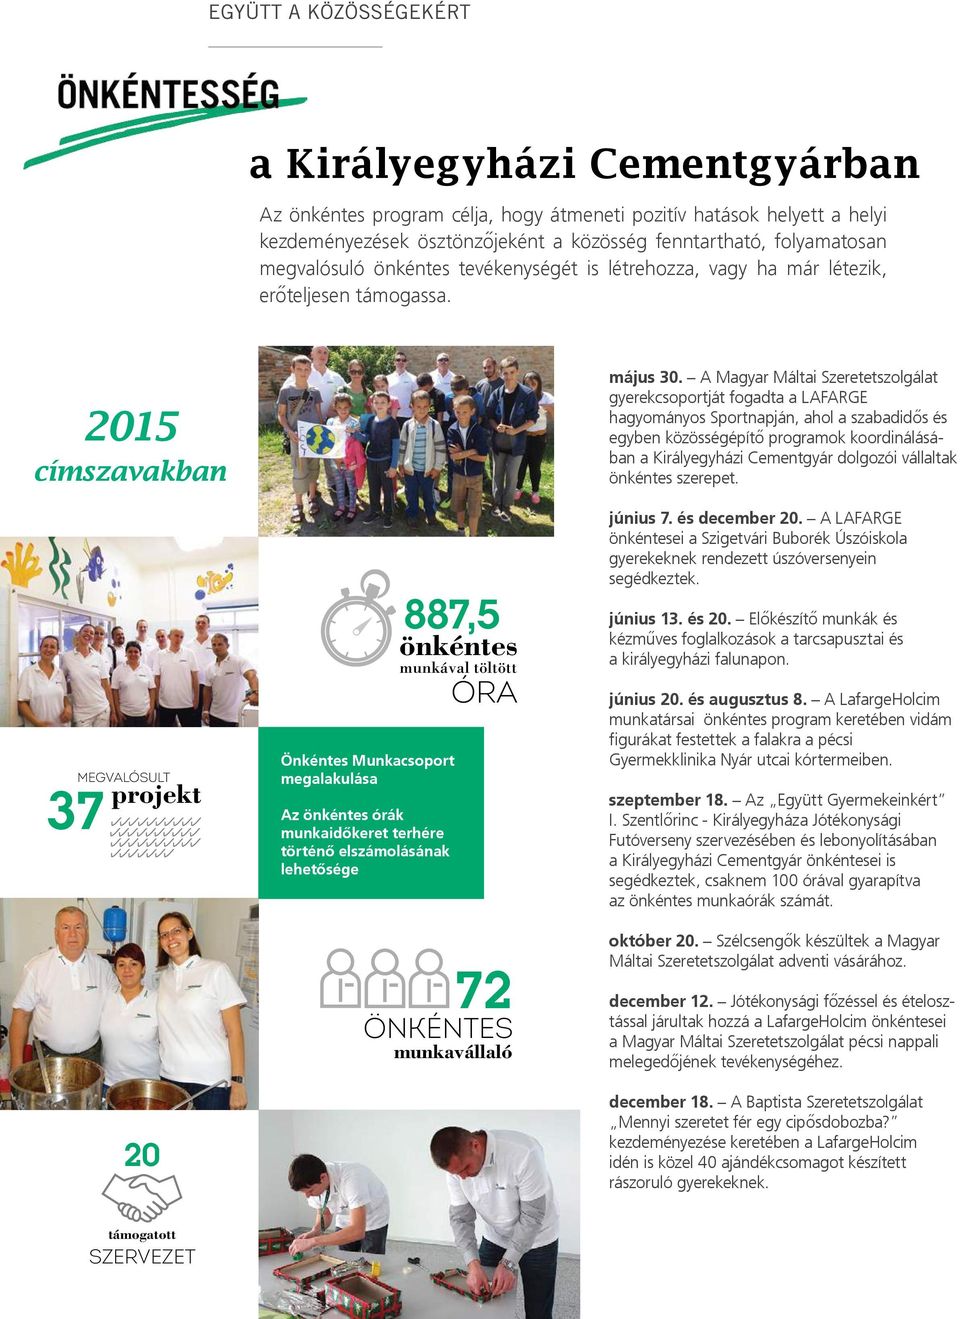 2015 címszavakban megvalósult projekt 20 Önkéntes Munkacsoport megalakulása Az önkéntes órák munkaidőkeret terhére történő elszámolásának lehetősége 887,5 önkéntes munkával töltött ÓRA 72 önkéntes